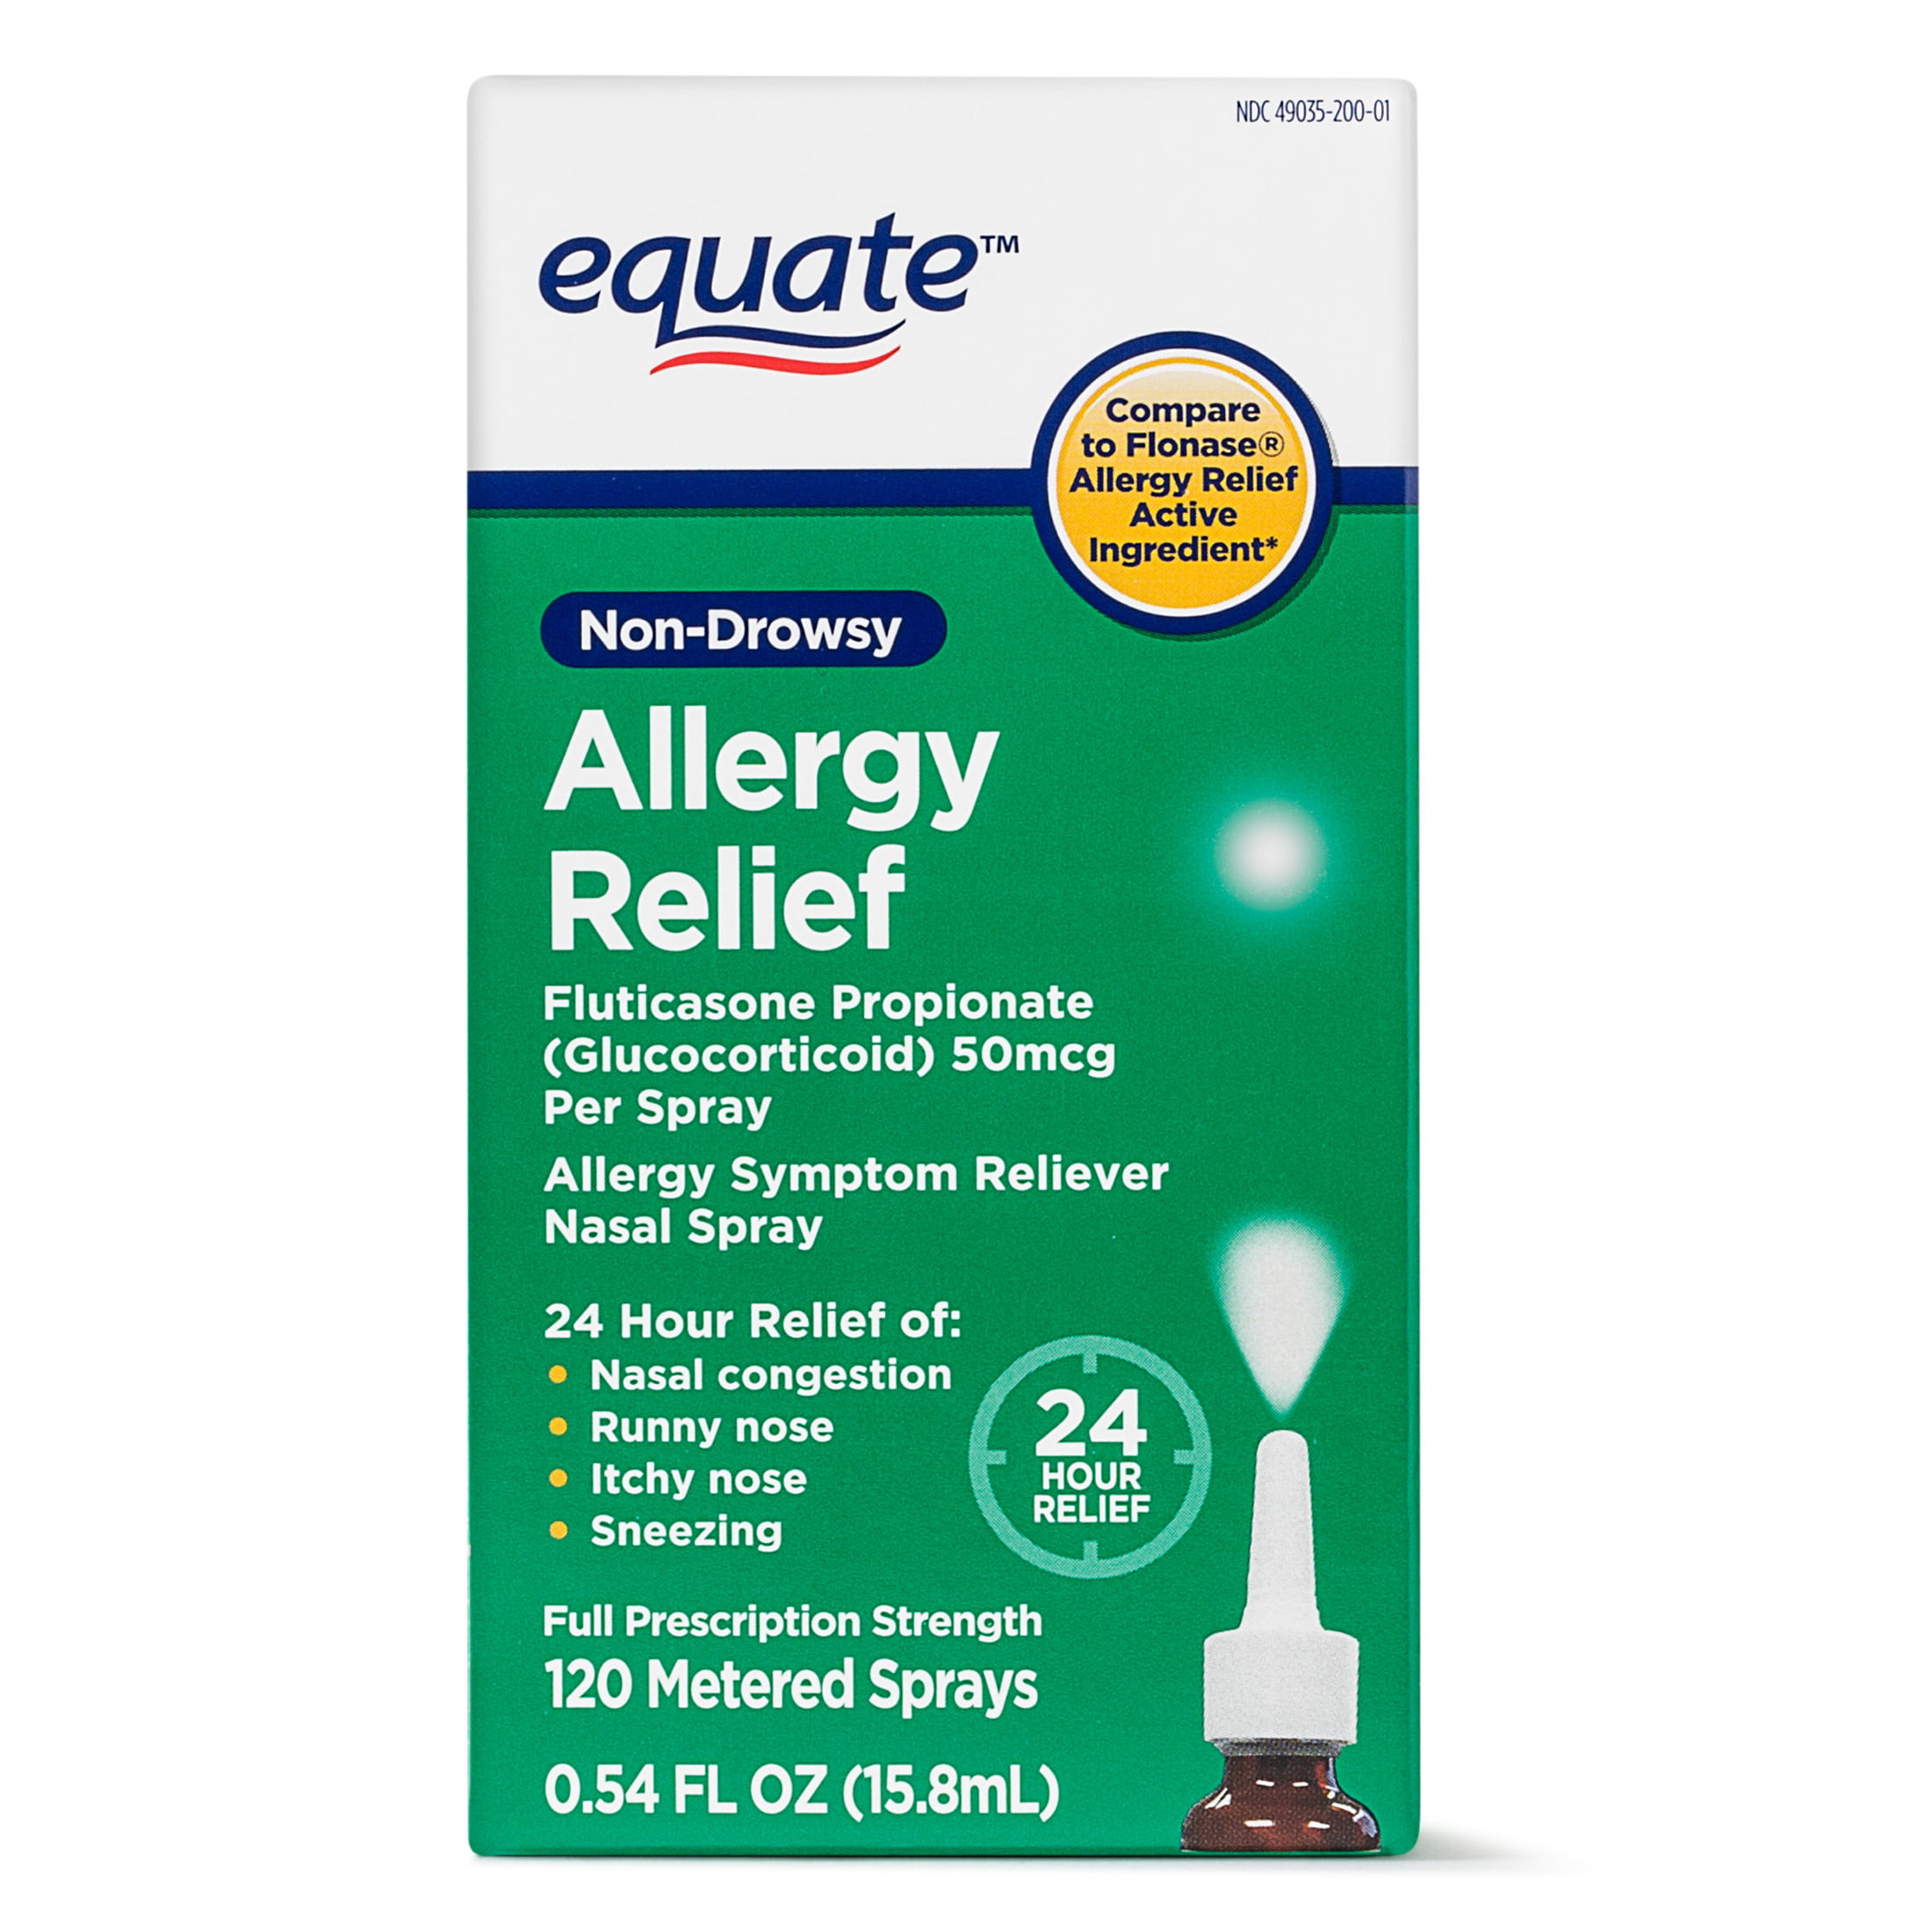 best sinus spray for allergies